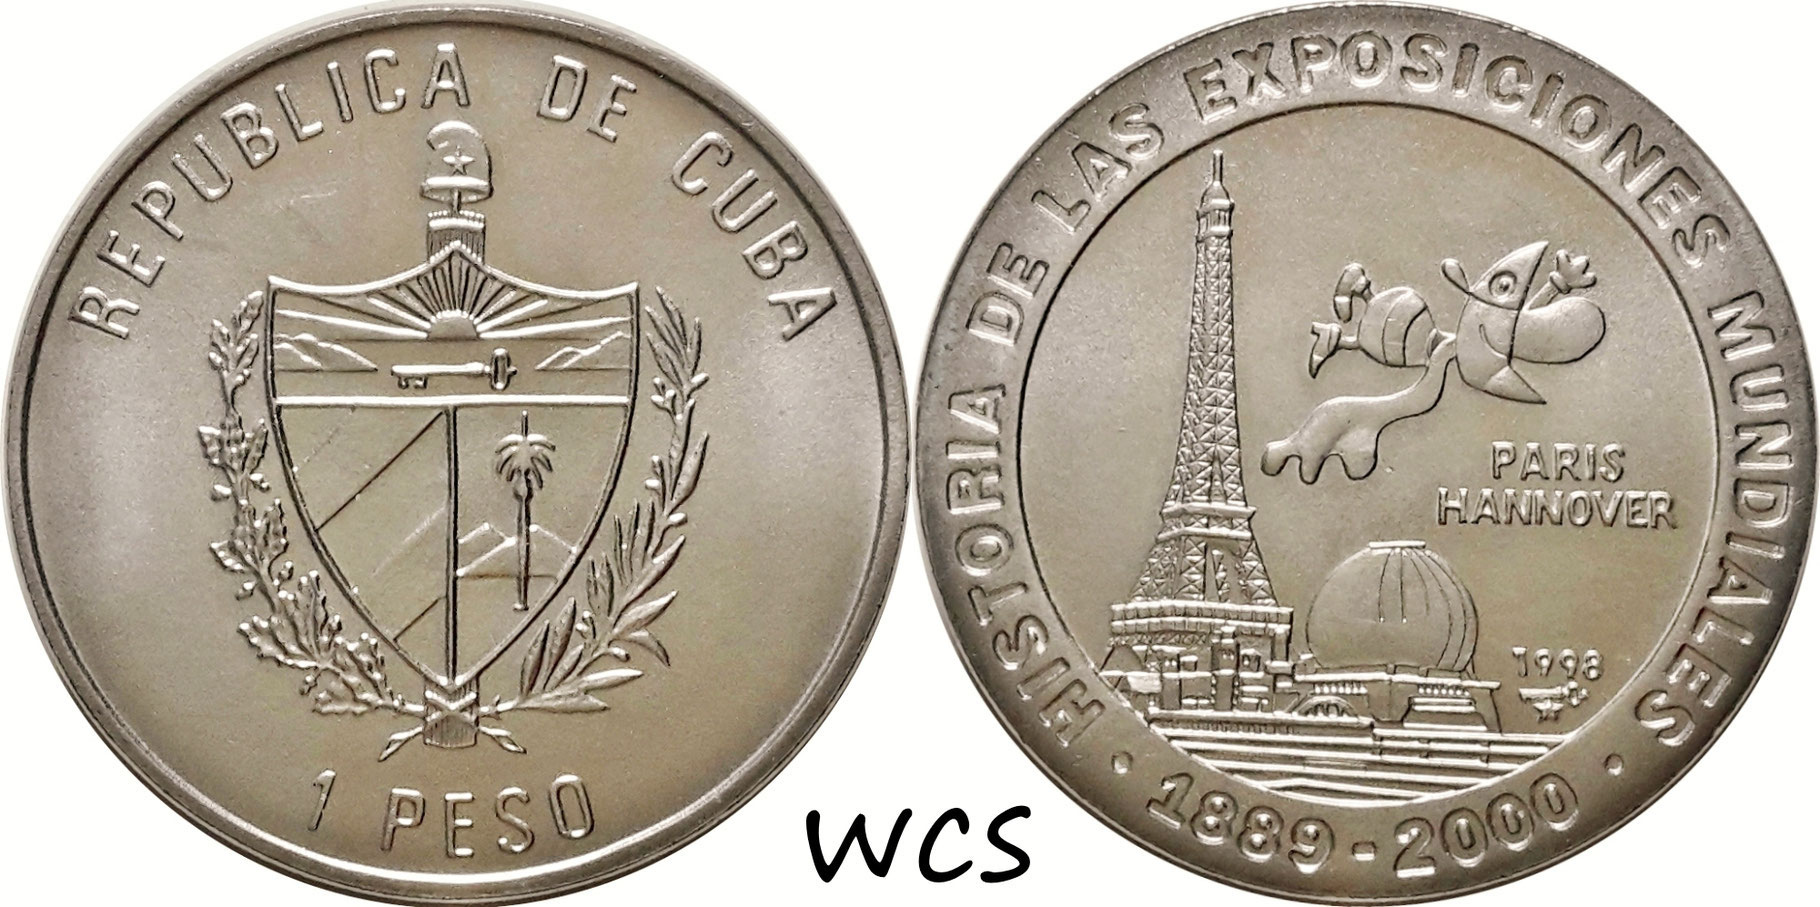 Cuba 1 Peso 1998 History of World Exhibitions - Paris 1889 UNC